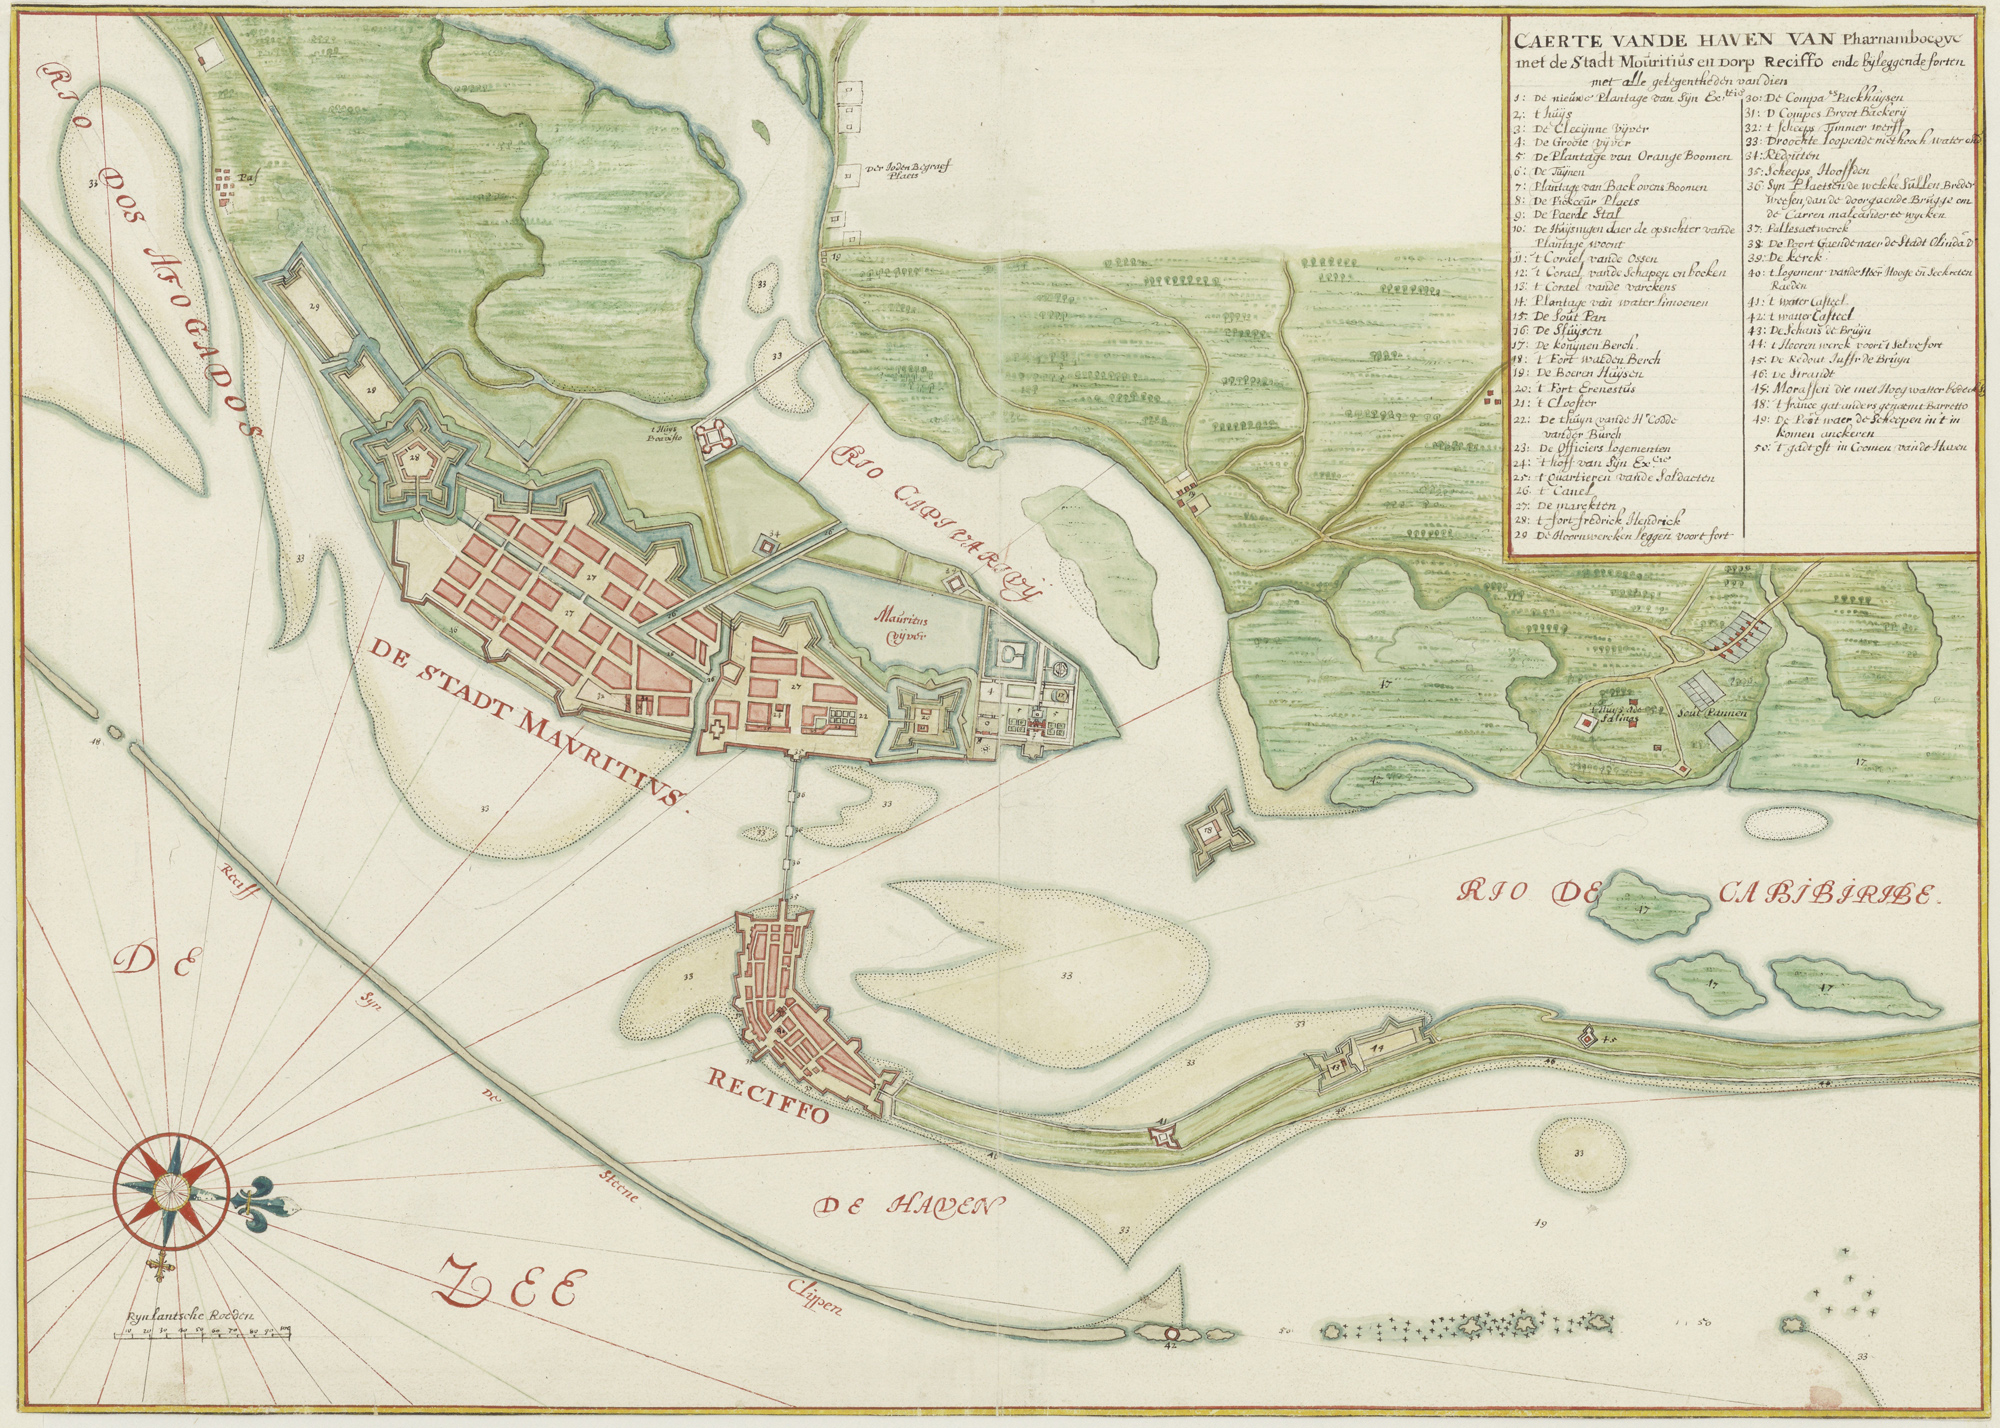 Kaart uit 1665 van de haven van Pernambuco met de stad Mauritius en het dorp Reciffe.